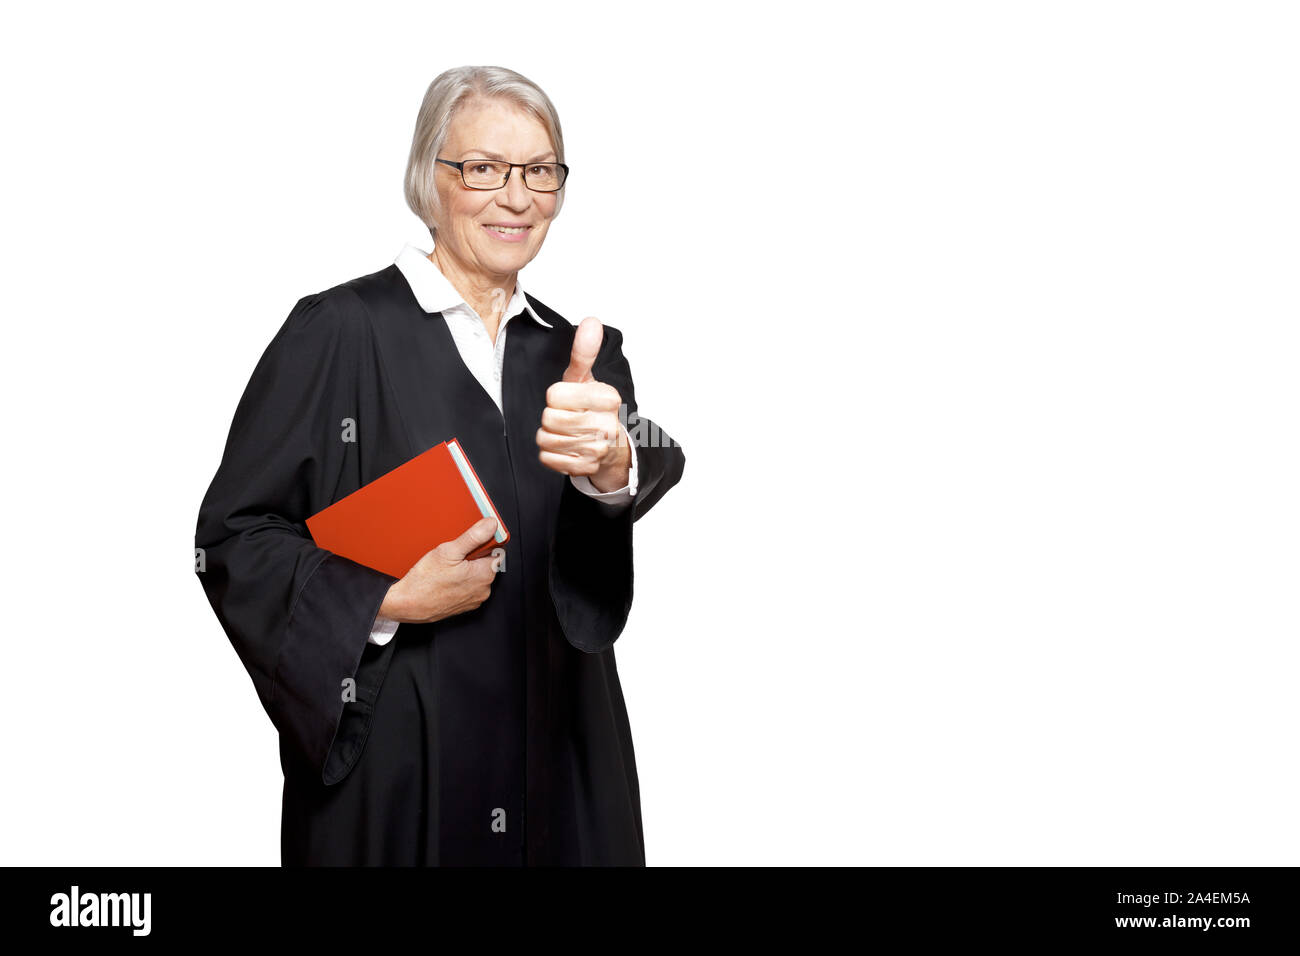 Miglior consulenza legale concetto: donna matura in un abito nero con una legge book making del pollice in alto segno. Foto Stock